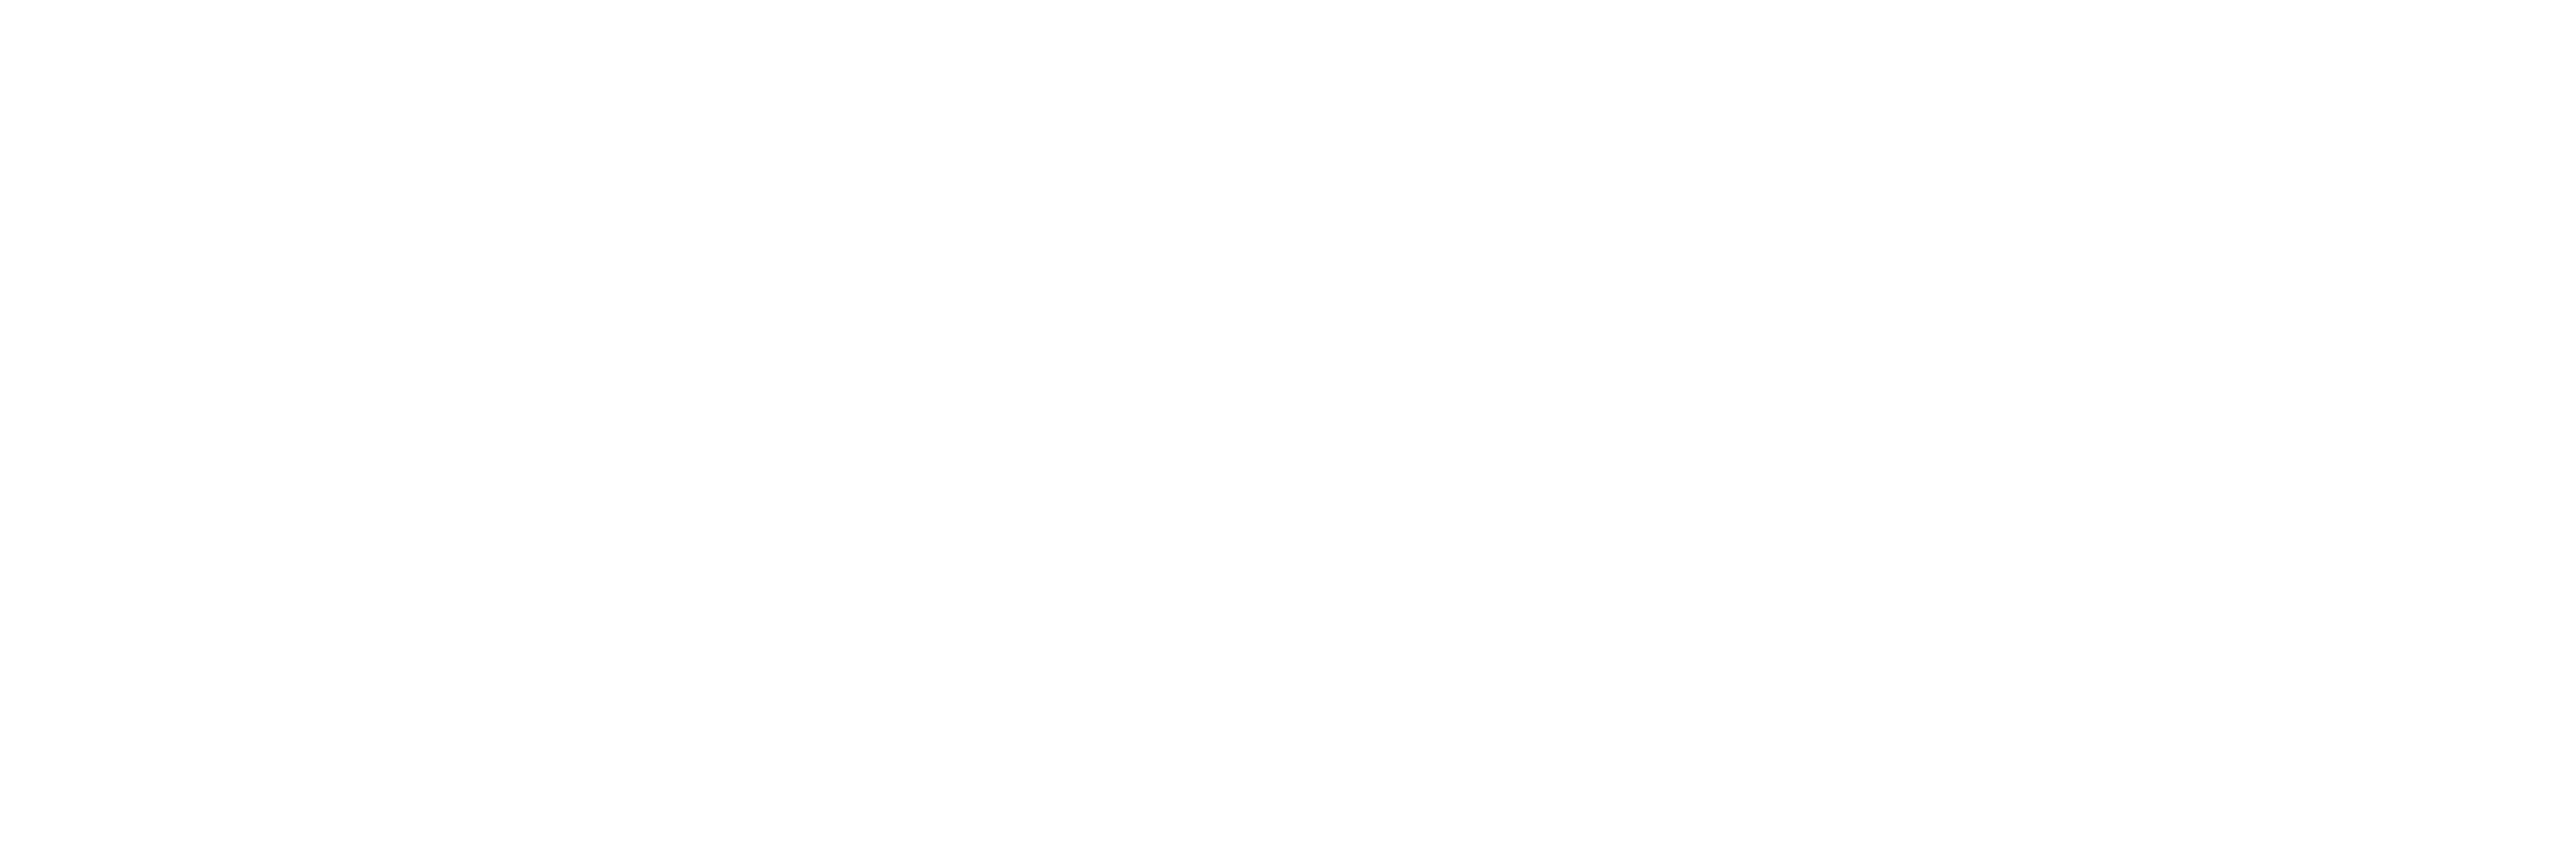 wantex logo inverted